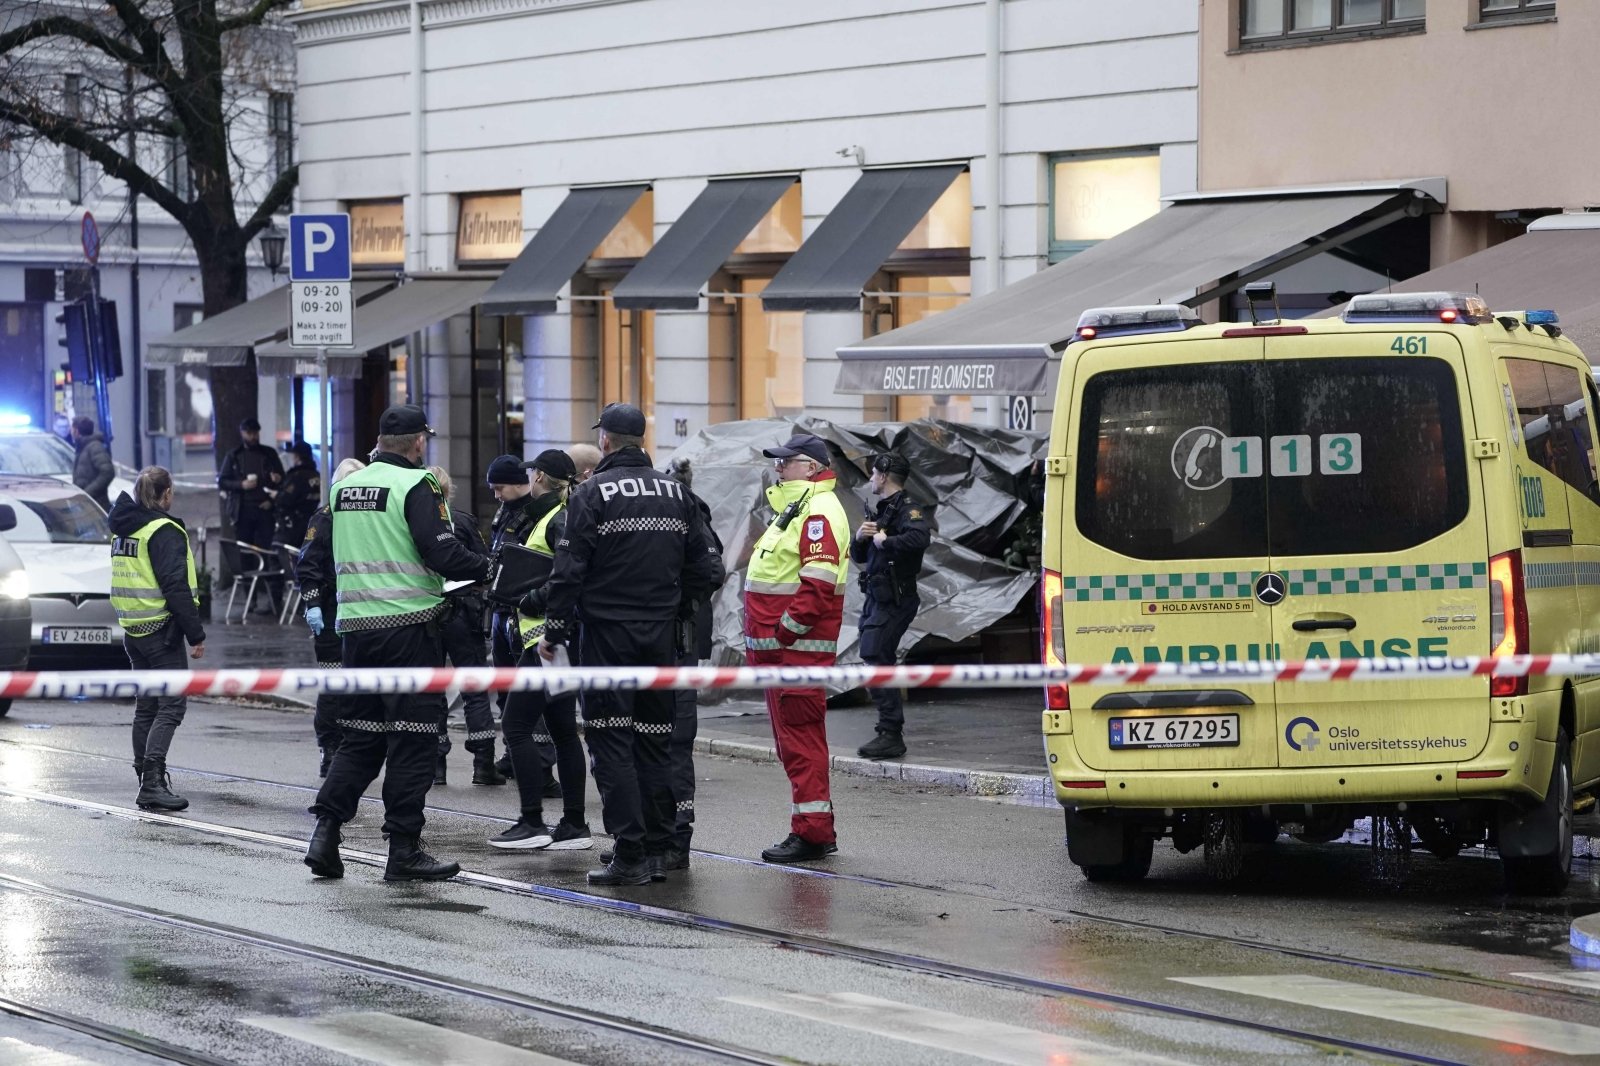 Angrep på en mann med kniv i den norske hovedstaden